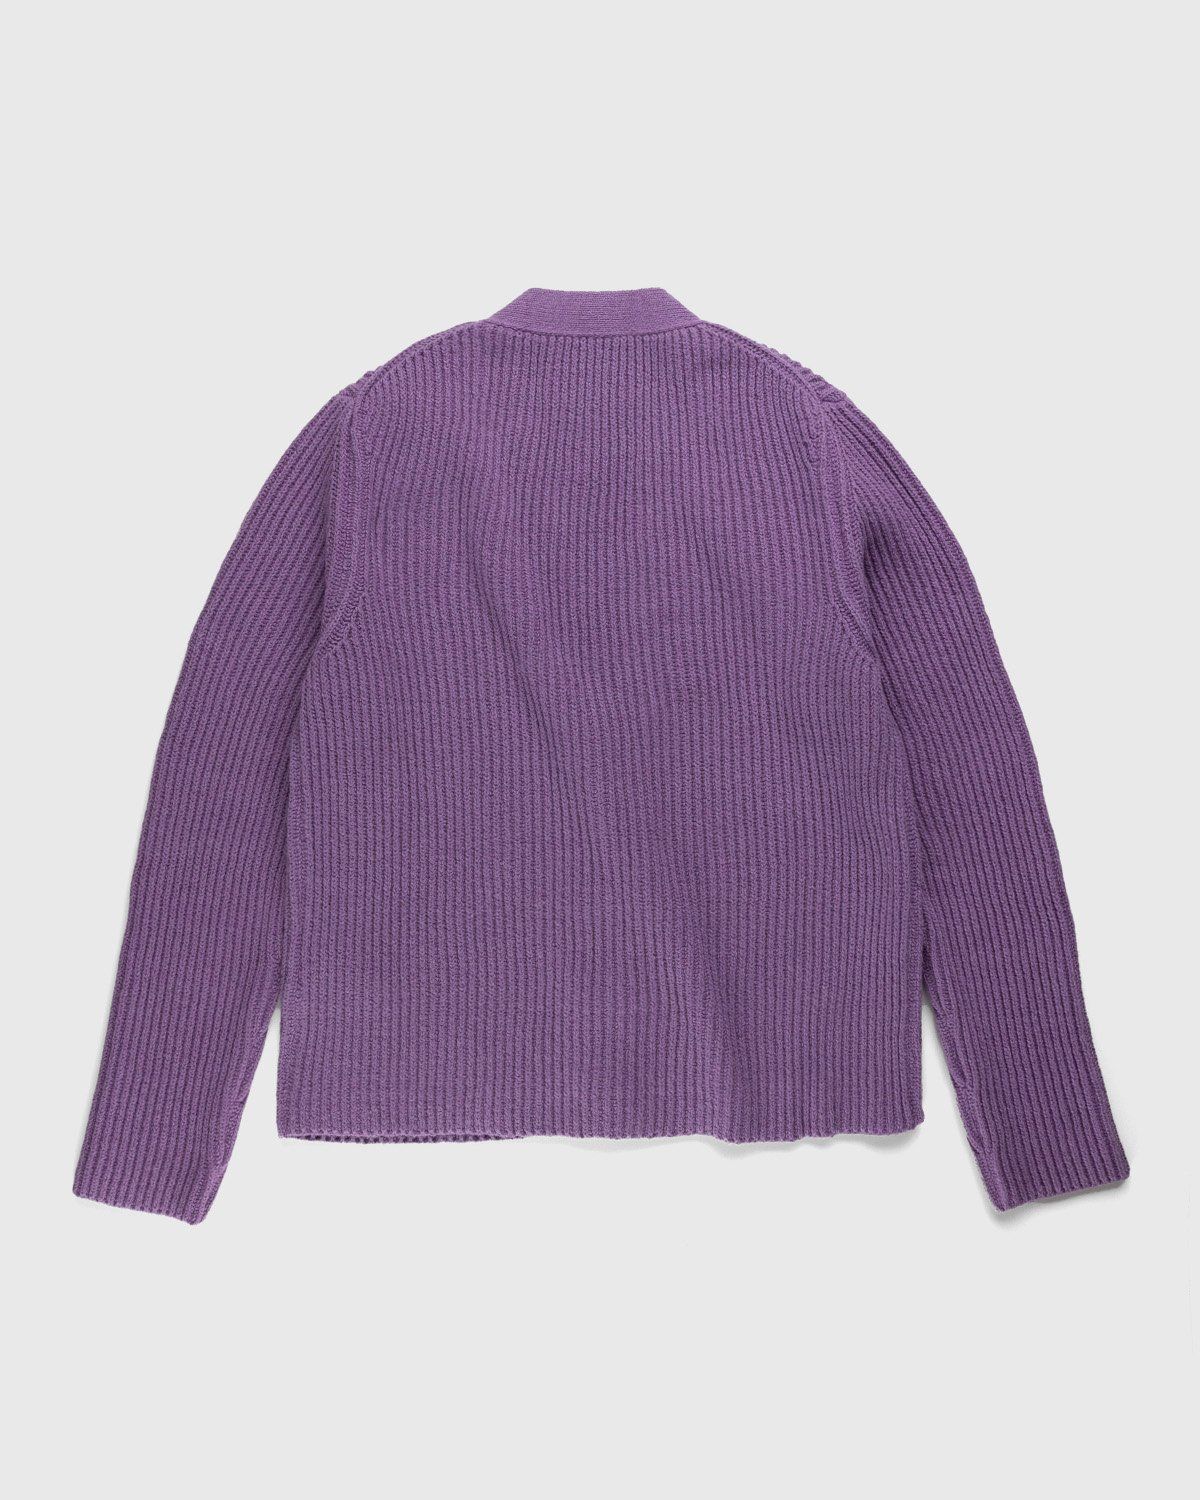 Jil Sander – Rib Knit Cardigan Medium Purple - Knitwear - Purple - Image 2